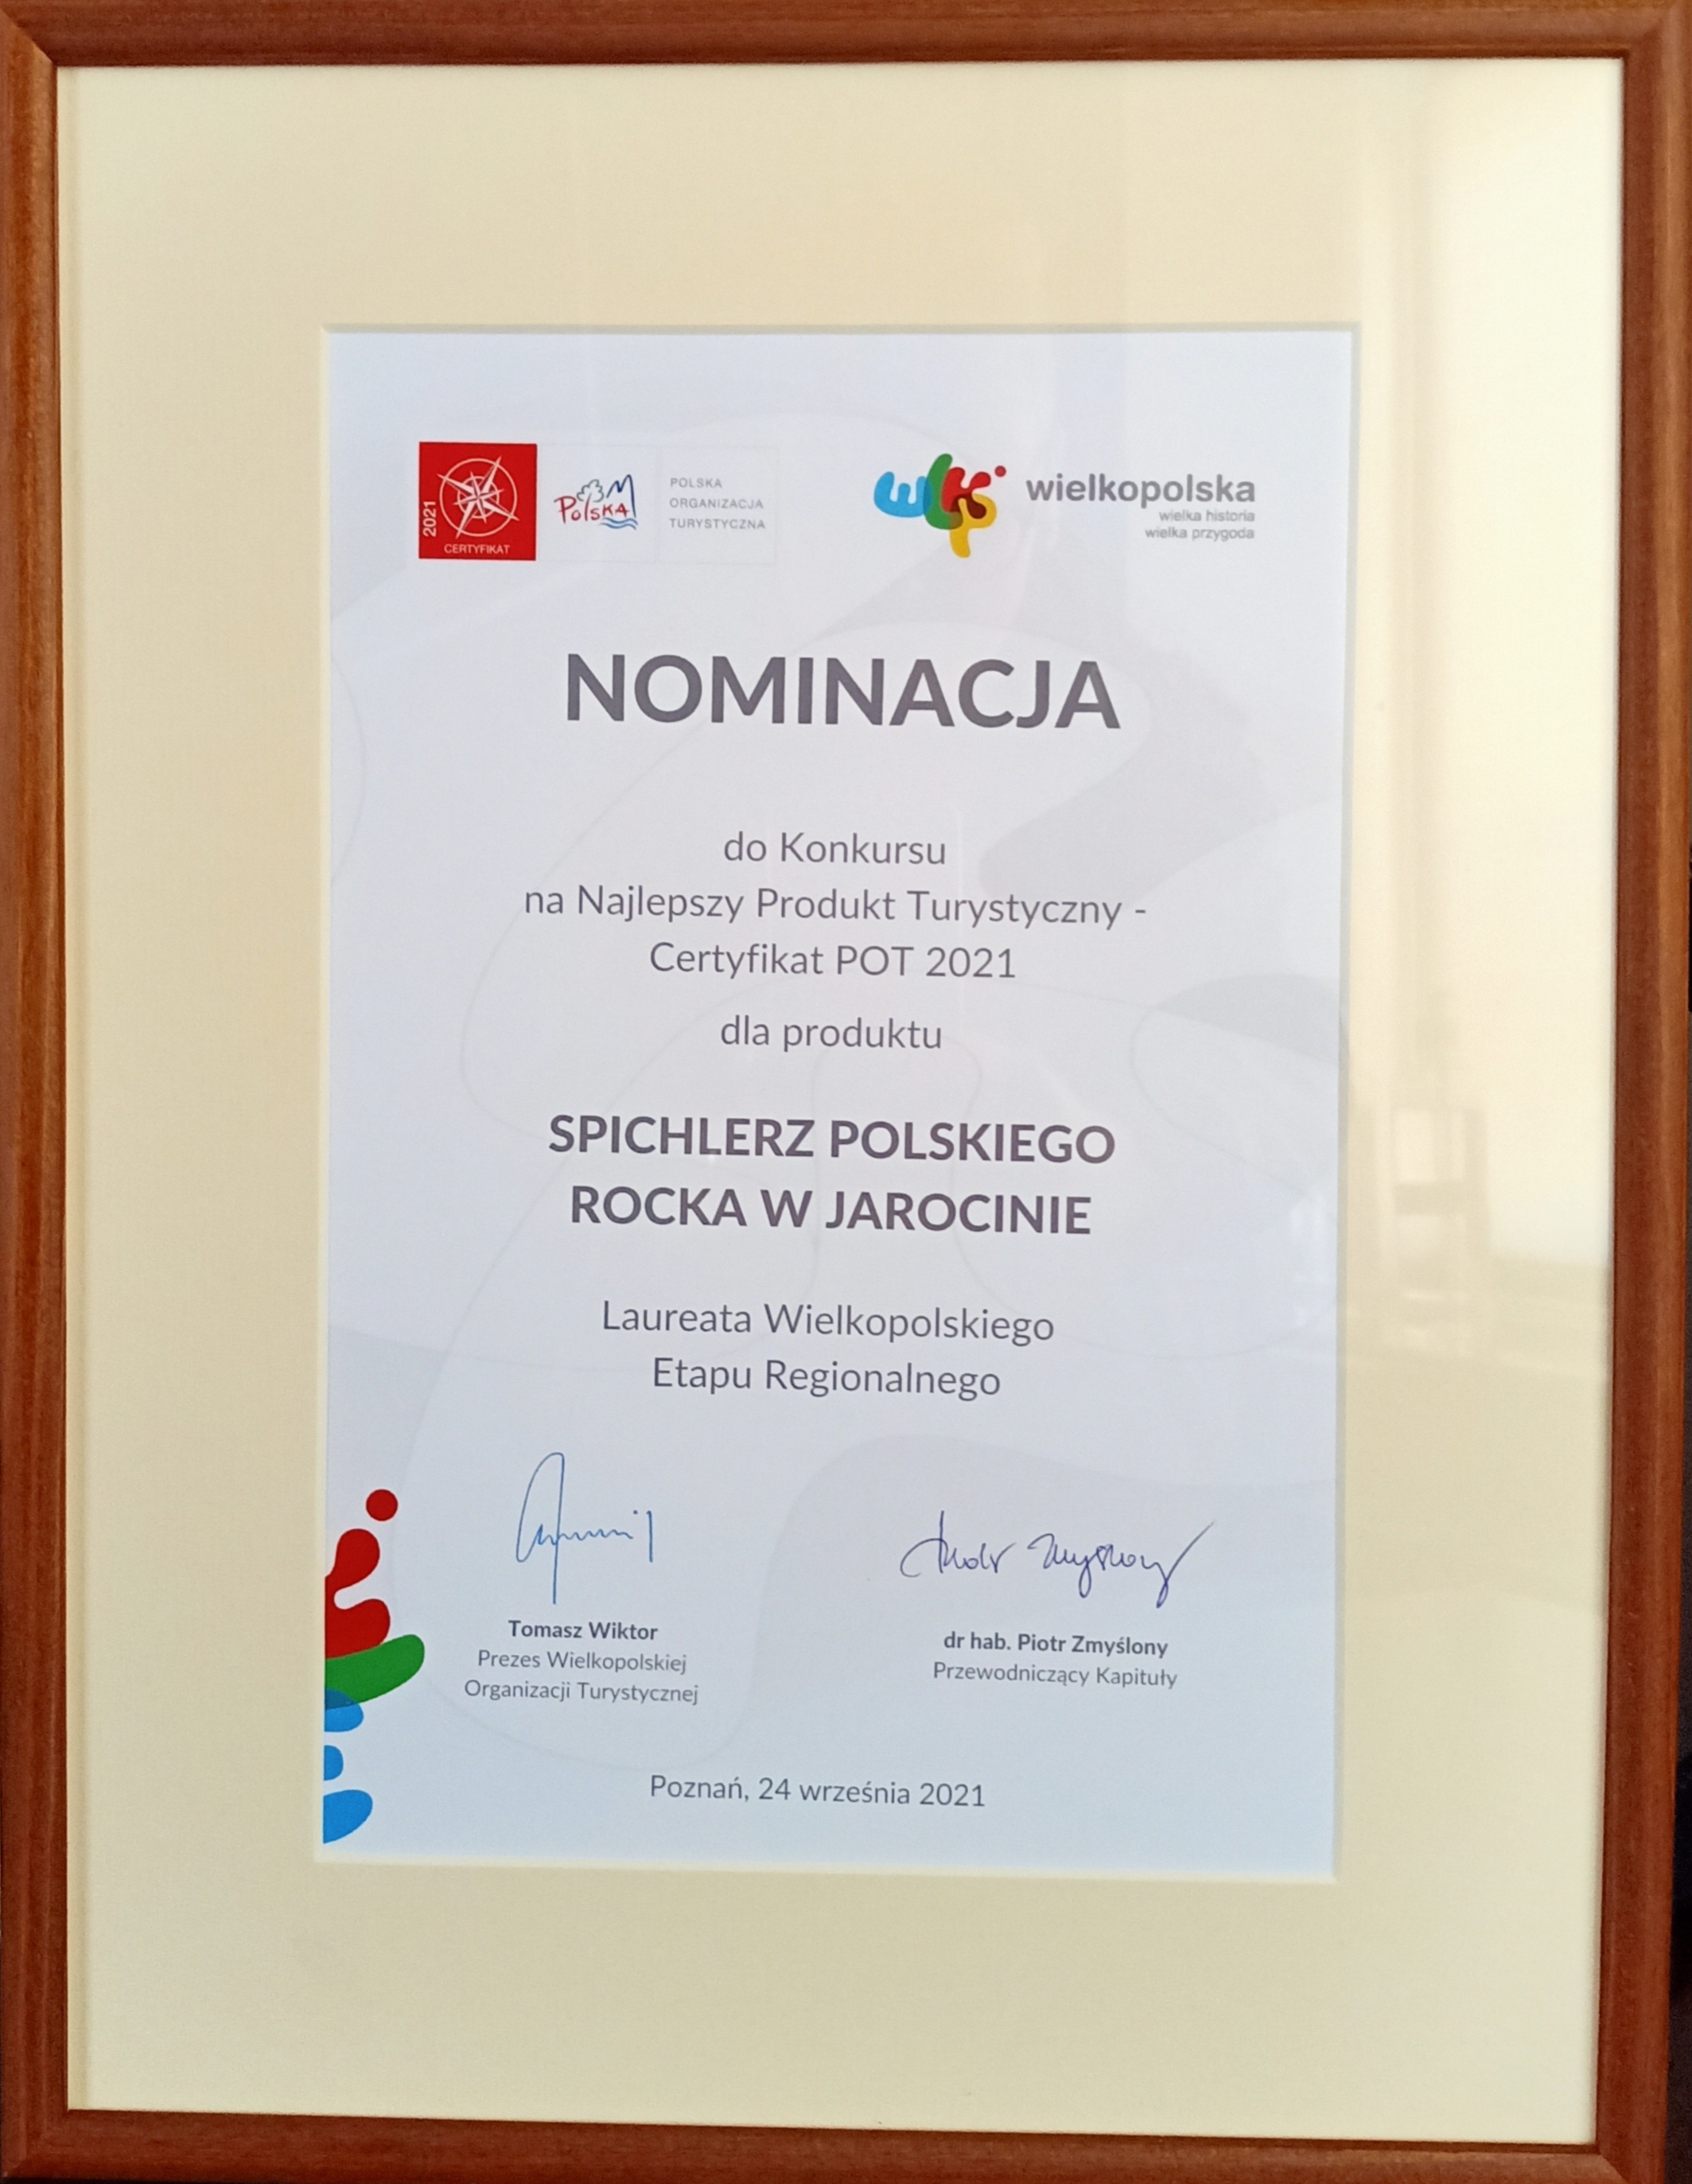 Spichlerz Polskiego Rocka nominowany do ogólnopolskiego konkursu na Najlepszy Produkt Turystyczny.